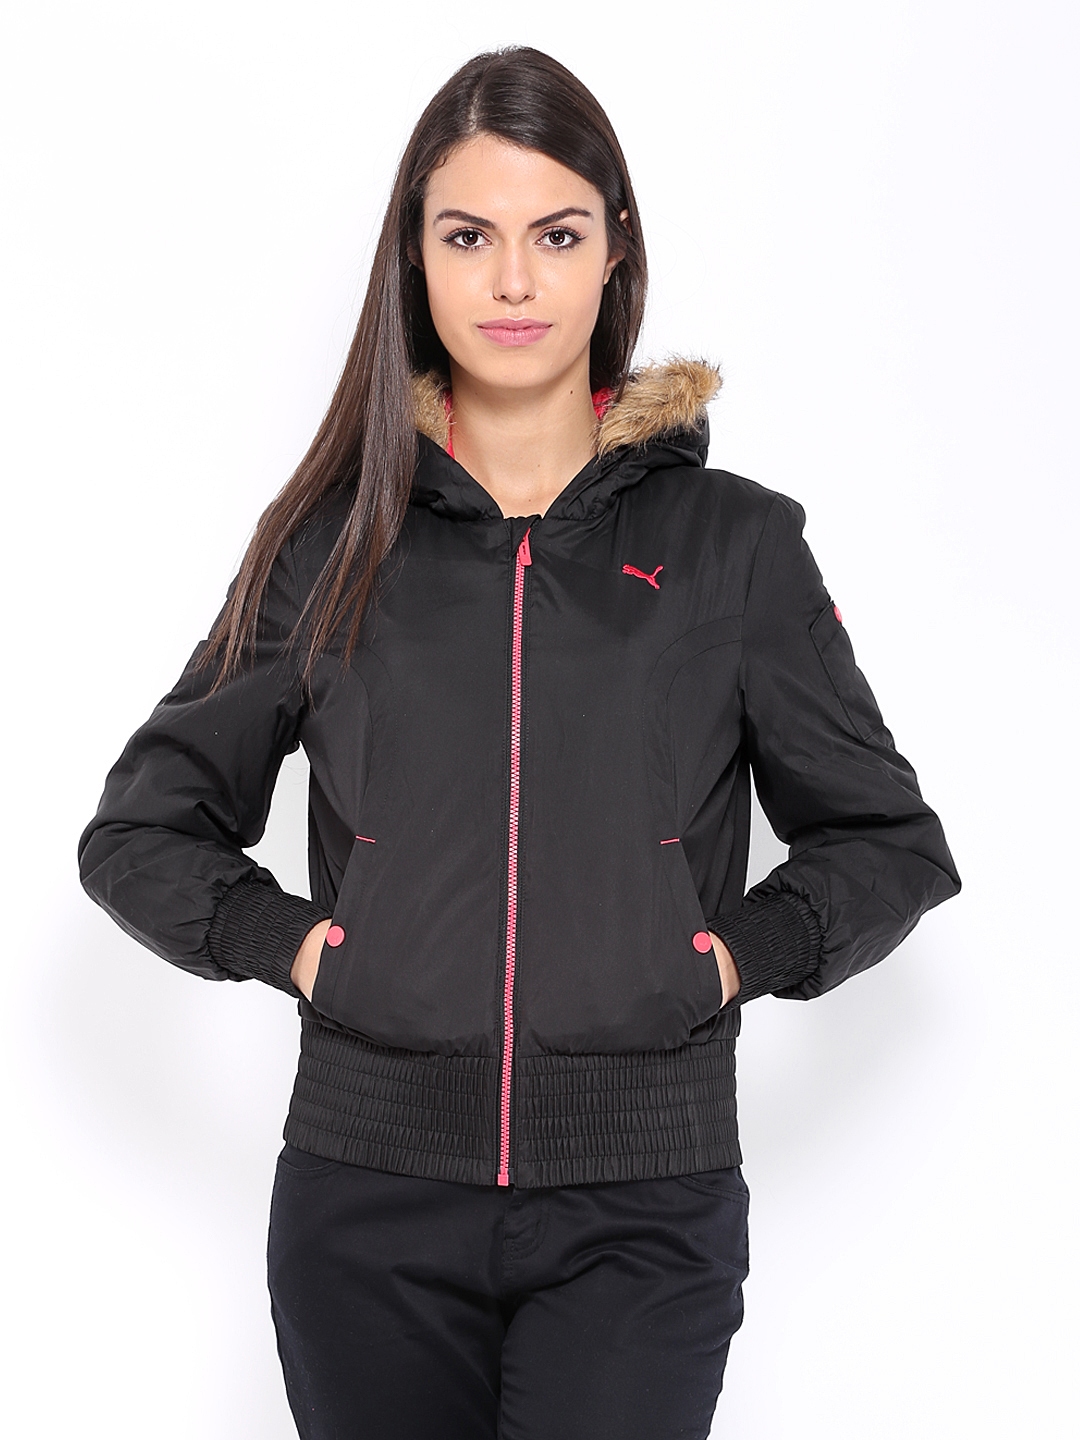 Download Buy Puma Women Black Hooded Jacket - Jackets for Women ...